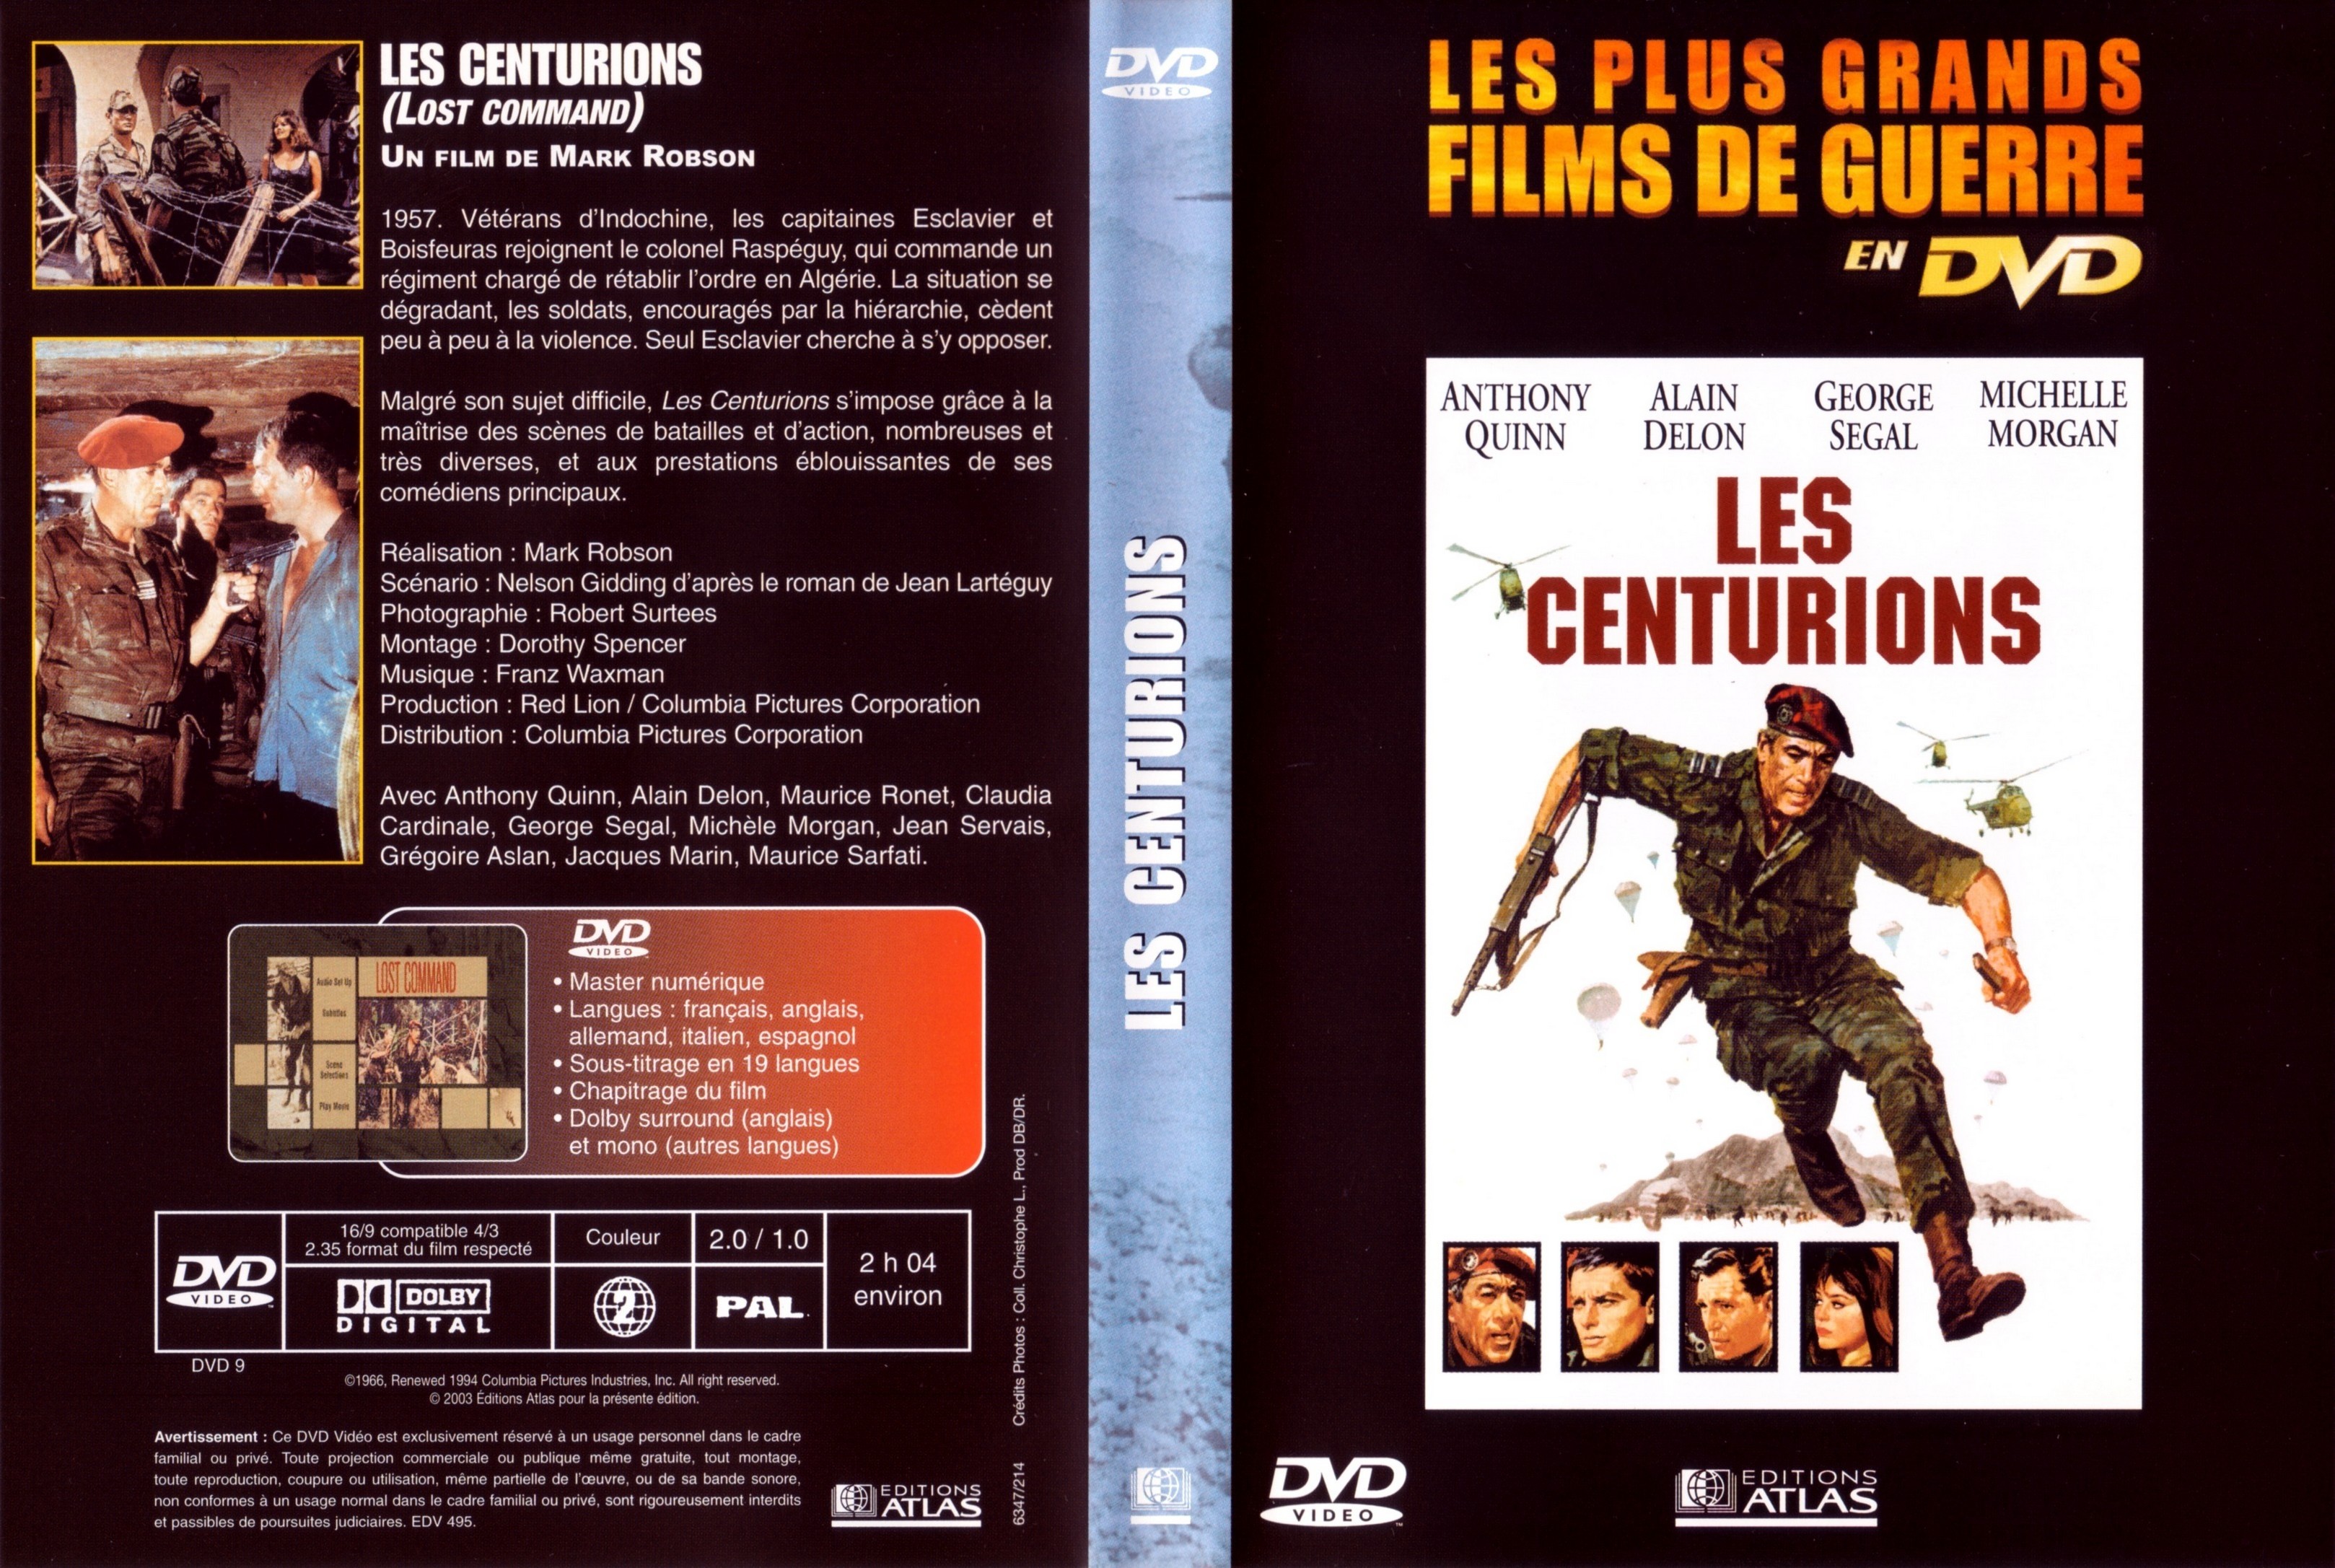 Jaquette DVD Les centurions